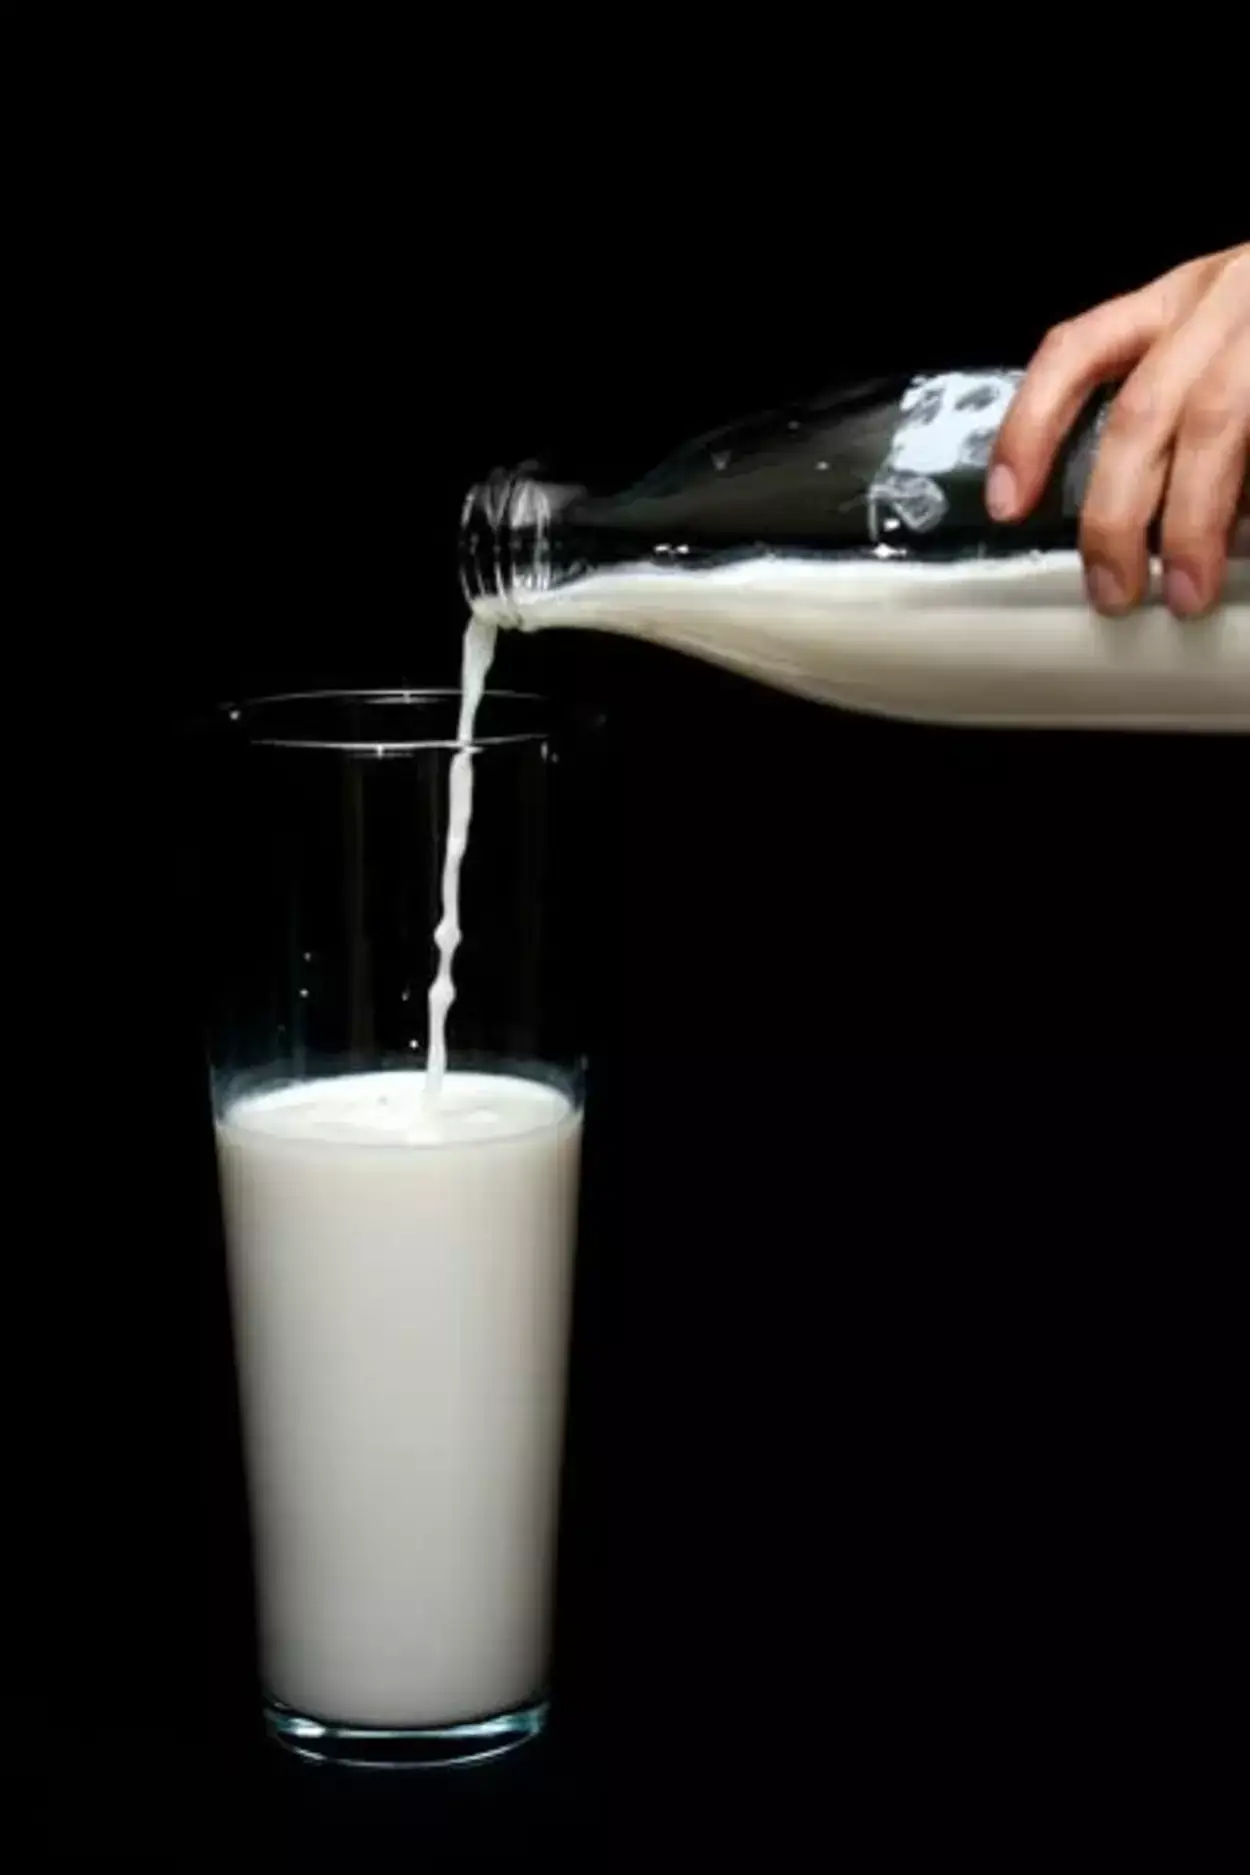  Kāda ir atšķirība starp D vitamīna pienu un pilnpienu? (Paskaidrots) - Visas atšķirības